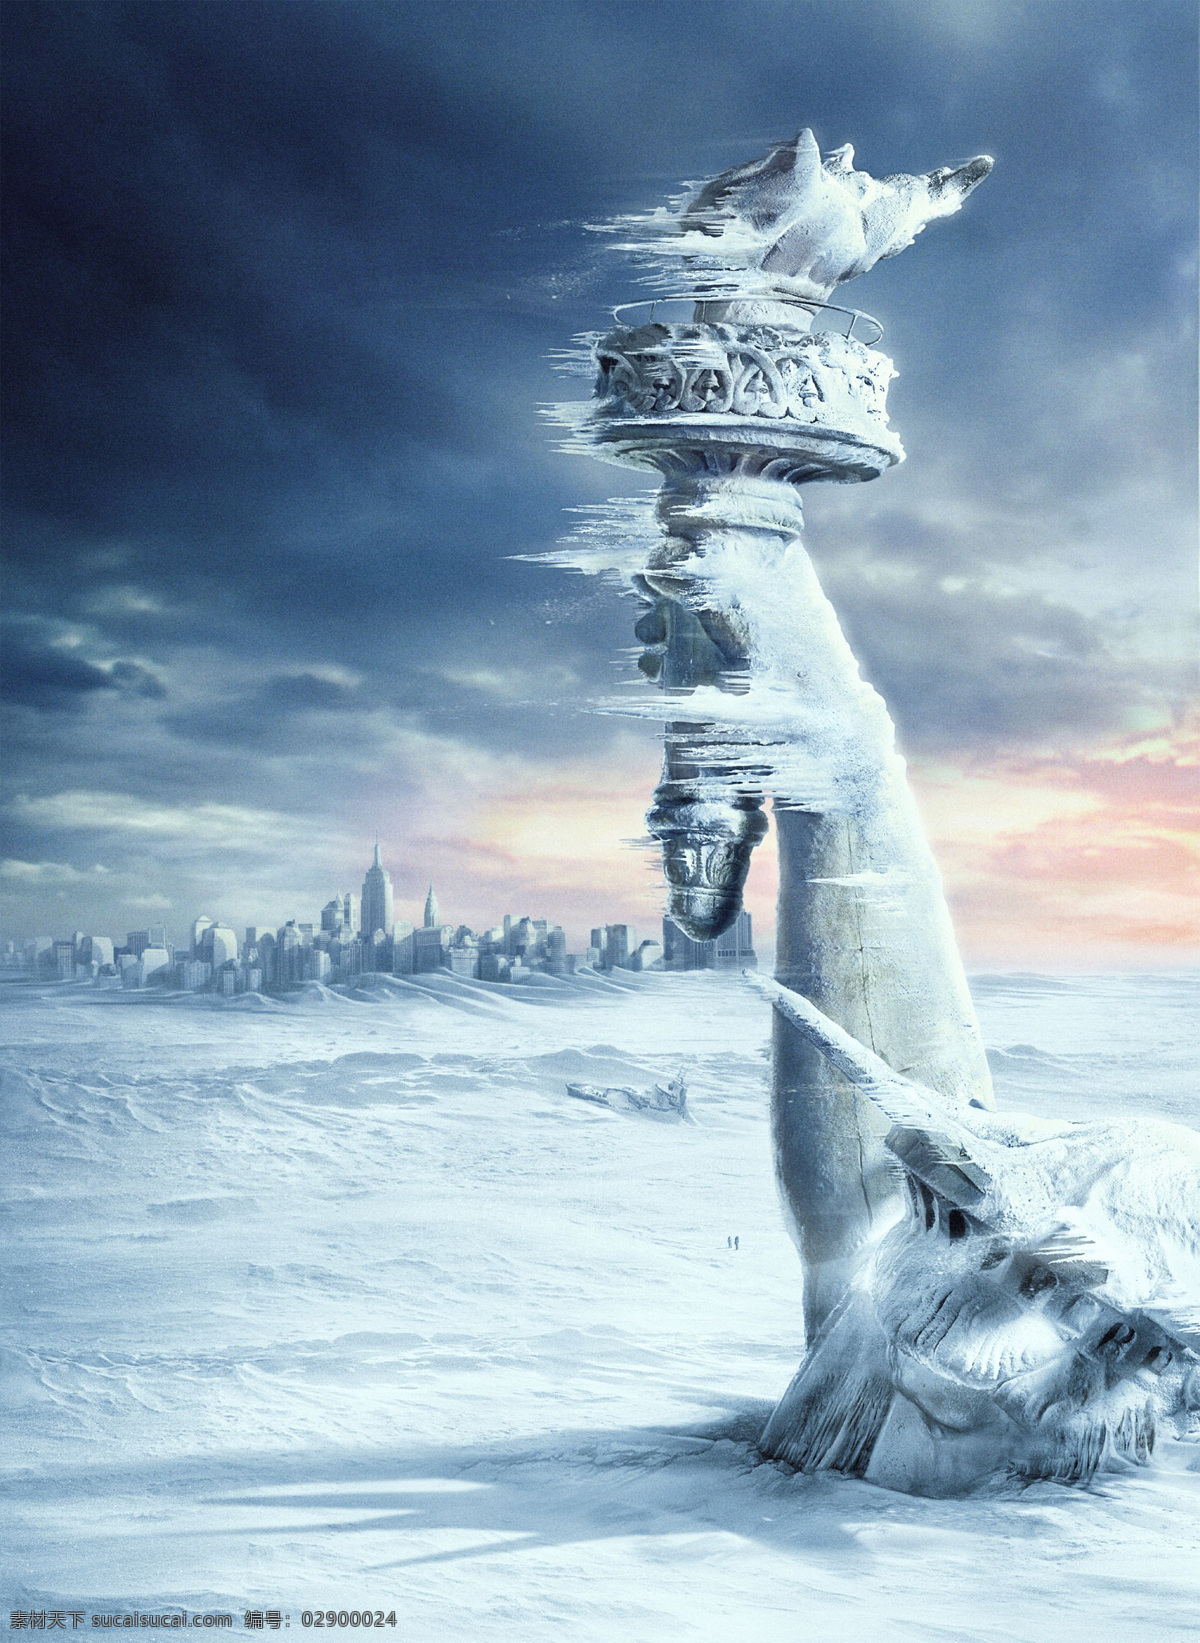 后天 灾难 科幻片 纽约 冰冻星球 自由女神像 电影 电影海报 电影海报素材 文化艺术 影视娱乐